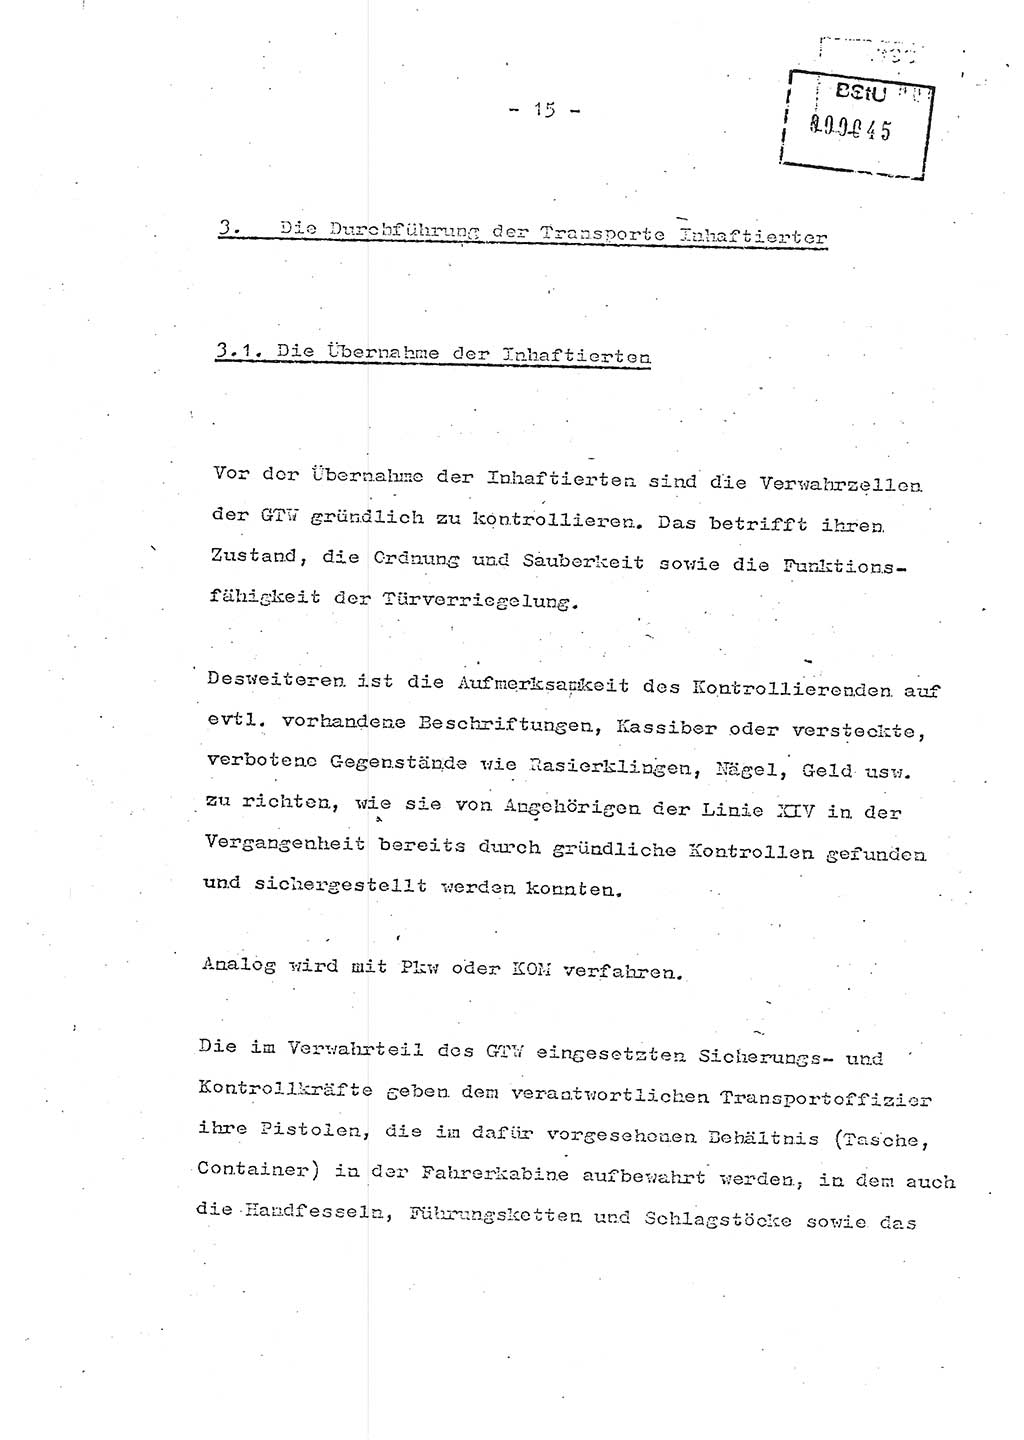 Schulungsmaterial Exemplar-Nr.: 7, Ministerium für Staatssicherheit [Deutsche Demokratische Republik (DDR)], Abteilung (Abt.) ⅩⅣ, Berlin 1986, Seite 15 (Sch.-Mat. Expl. 7 MfS DDR Abt. ⅩⅣ /86 1986, S. 15)